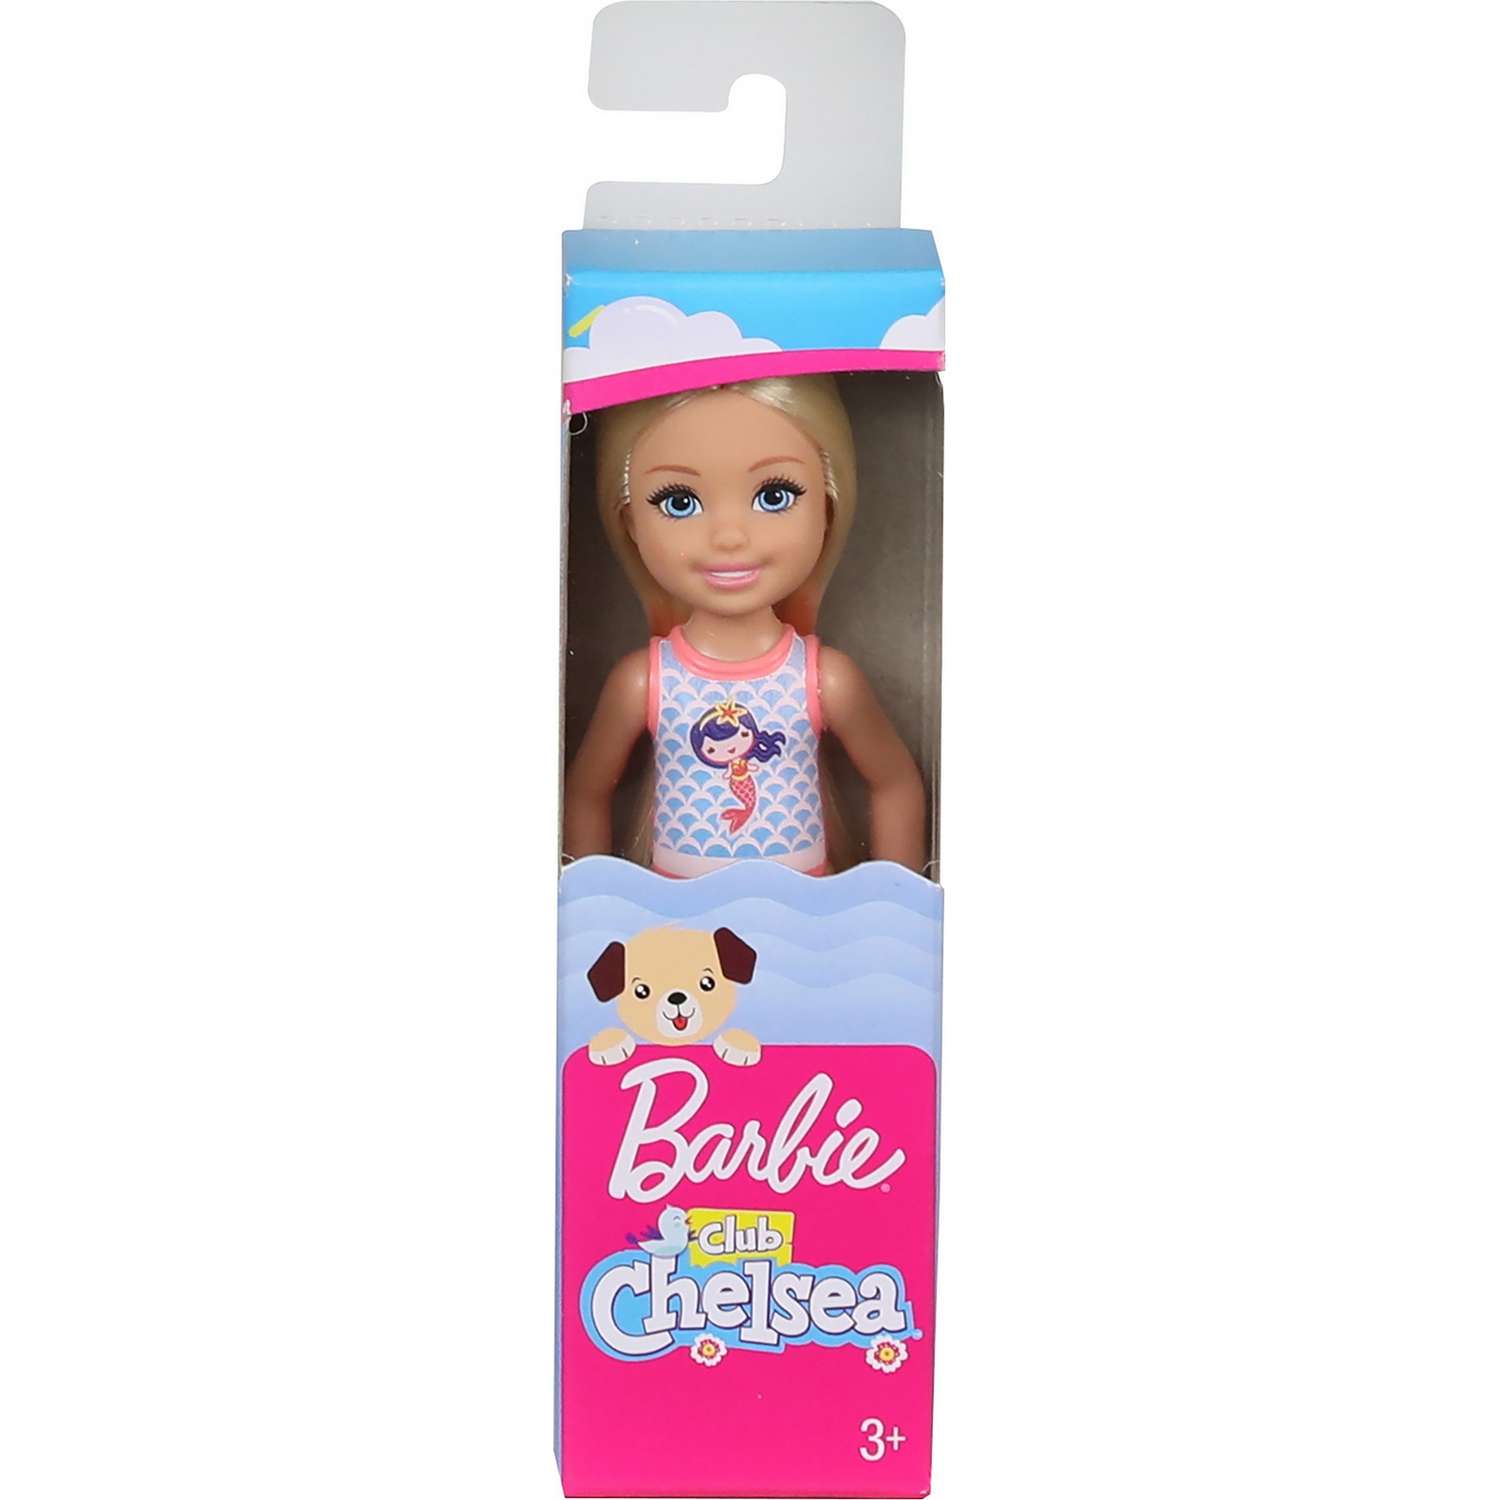 Кукла Barbie Челси в купальнике Блондинка GHV55 GLN73 - фото 2